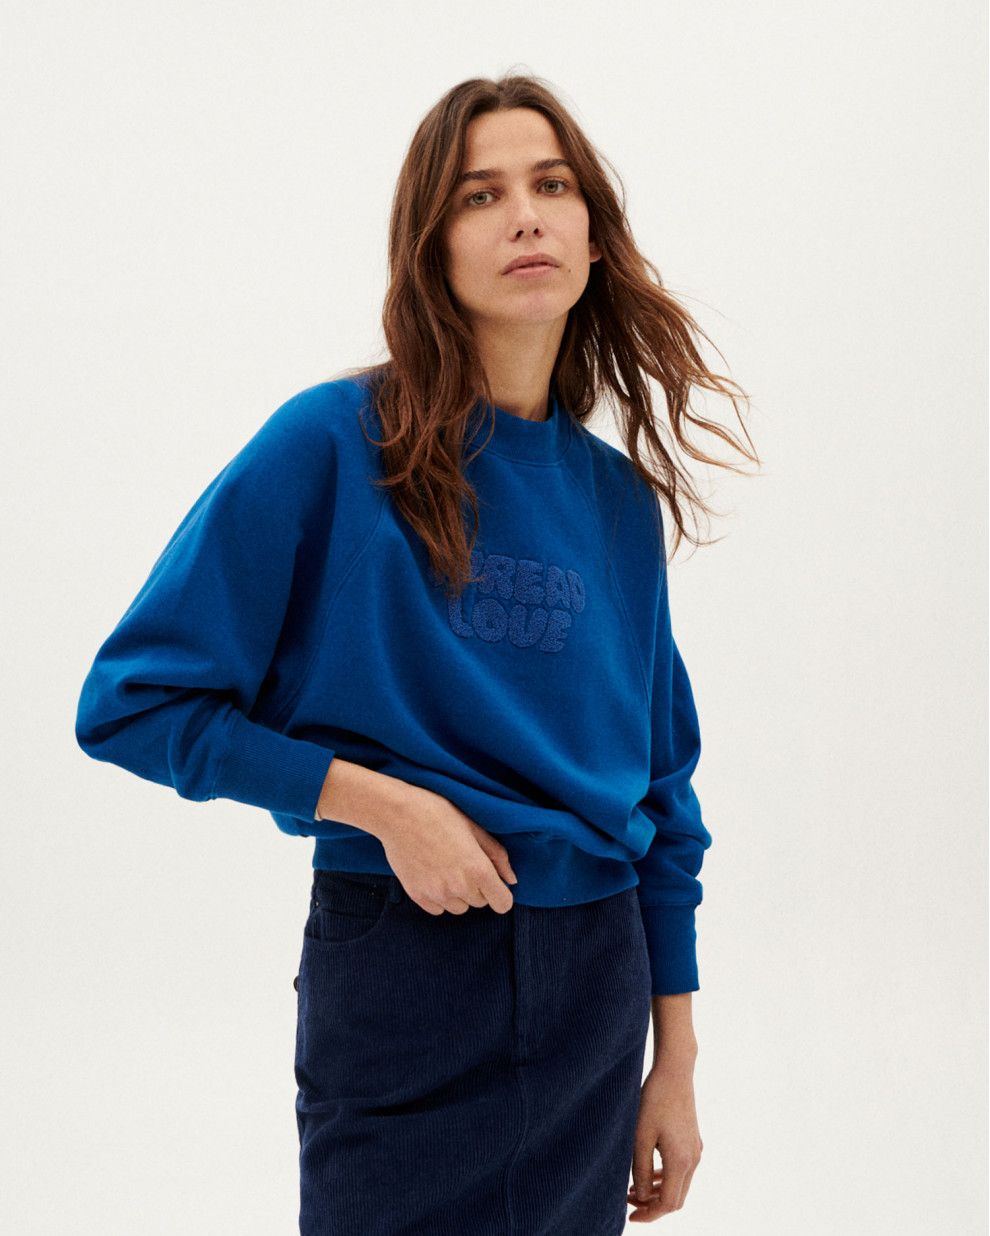 Spread Love Klein Blue Sweatshirt